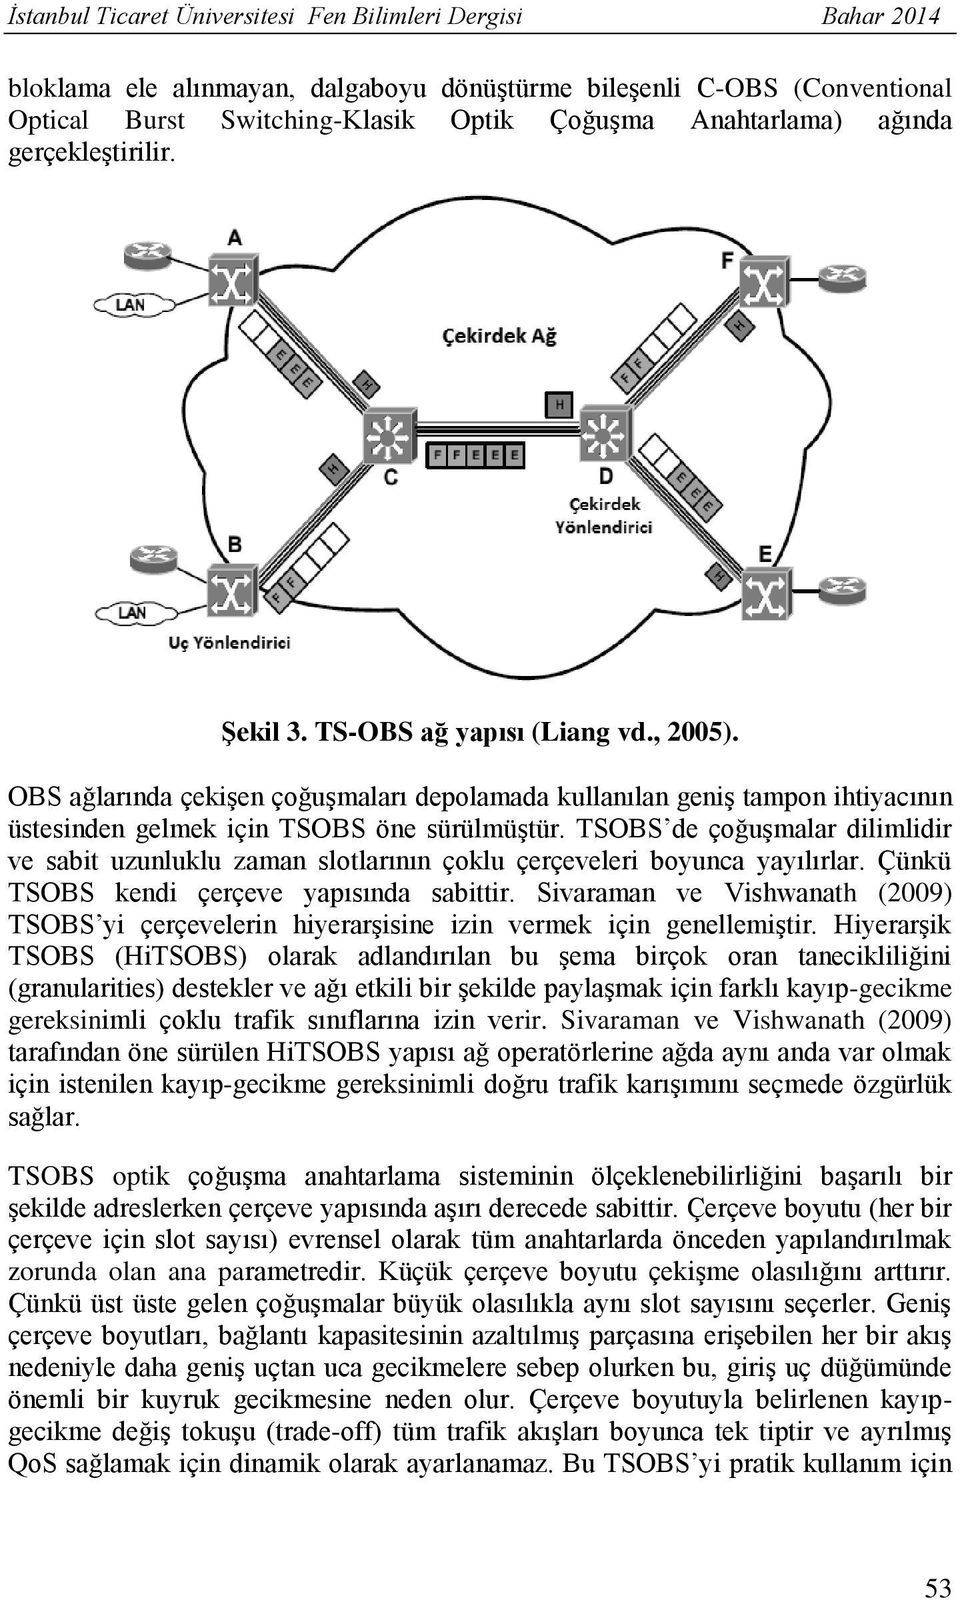 TSOBS de çoğuşmalar dilimlidir ve sabit uzunluklu zaman slotlarının çoklu çerçeveleri boyunca yayılırlar. Çünkü TSOBS kendi çerçeve yapısında sabittir.